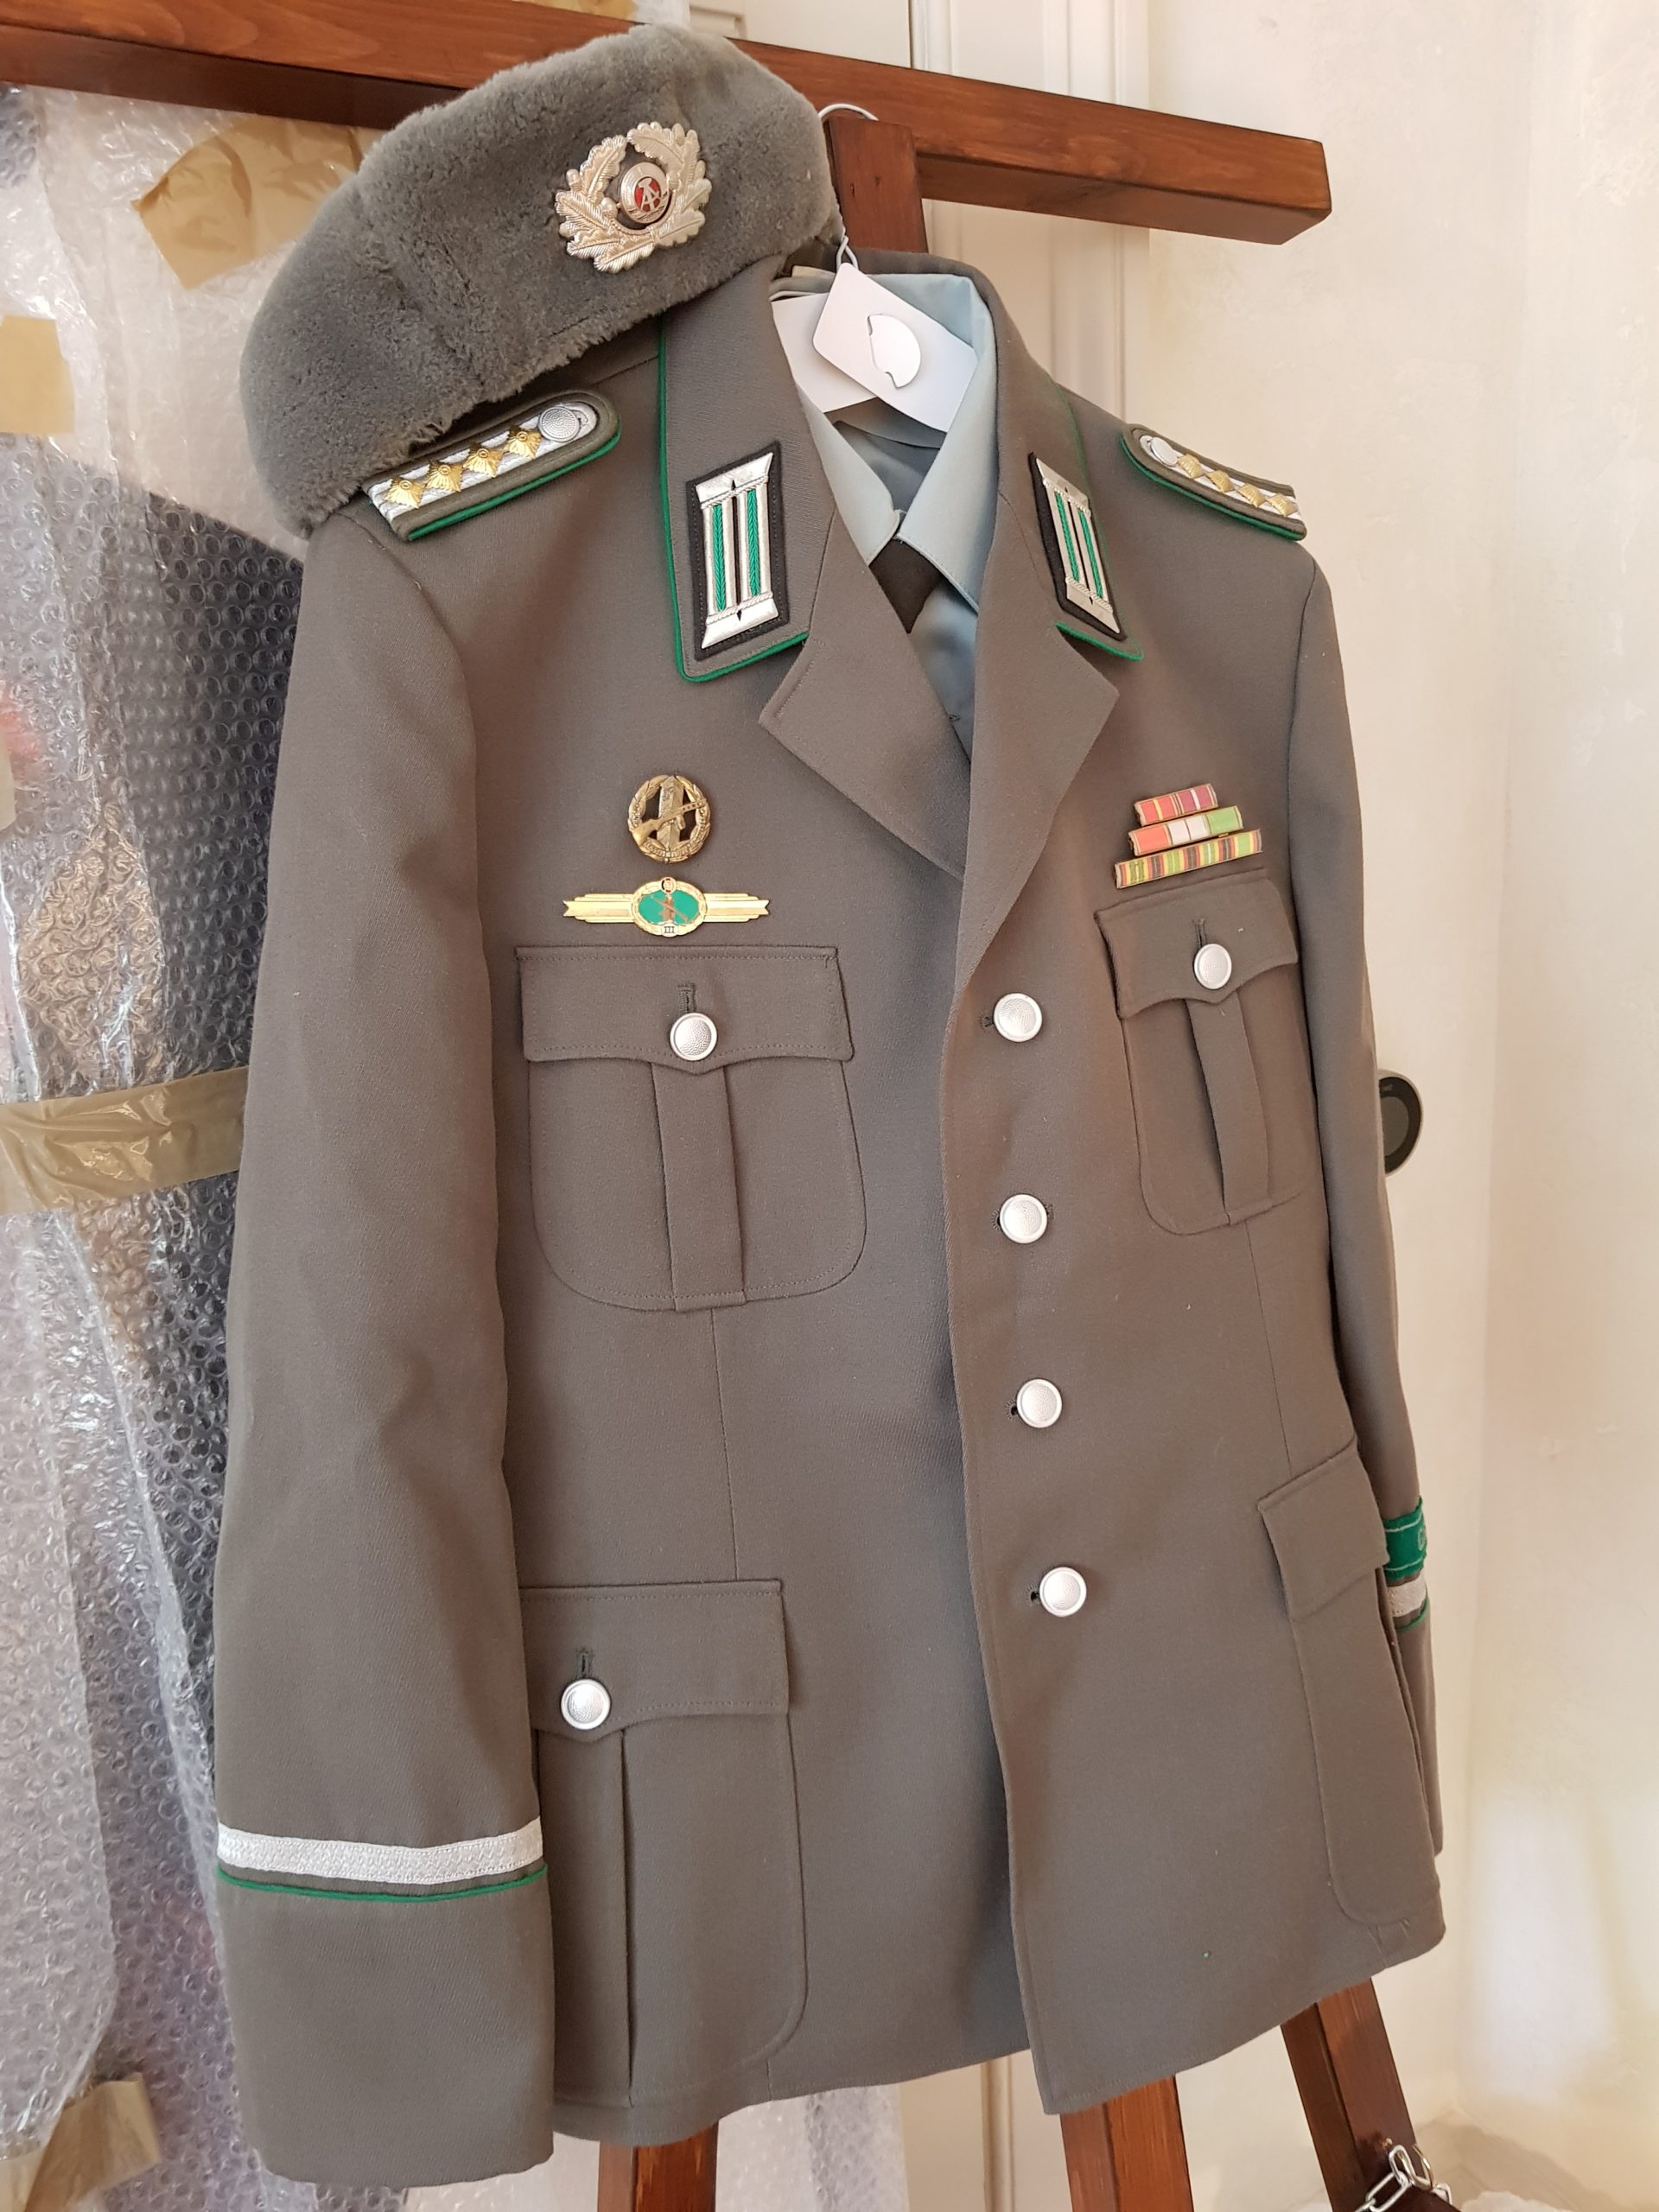 Stasi colonel uniform - Museum of Communist